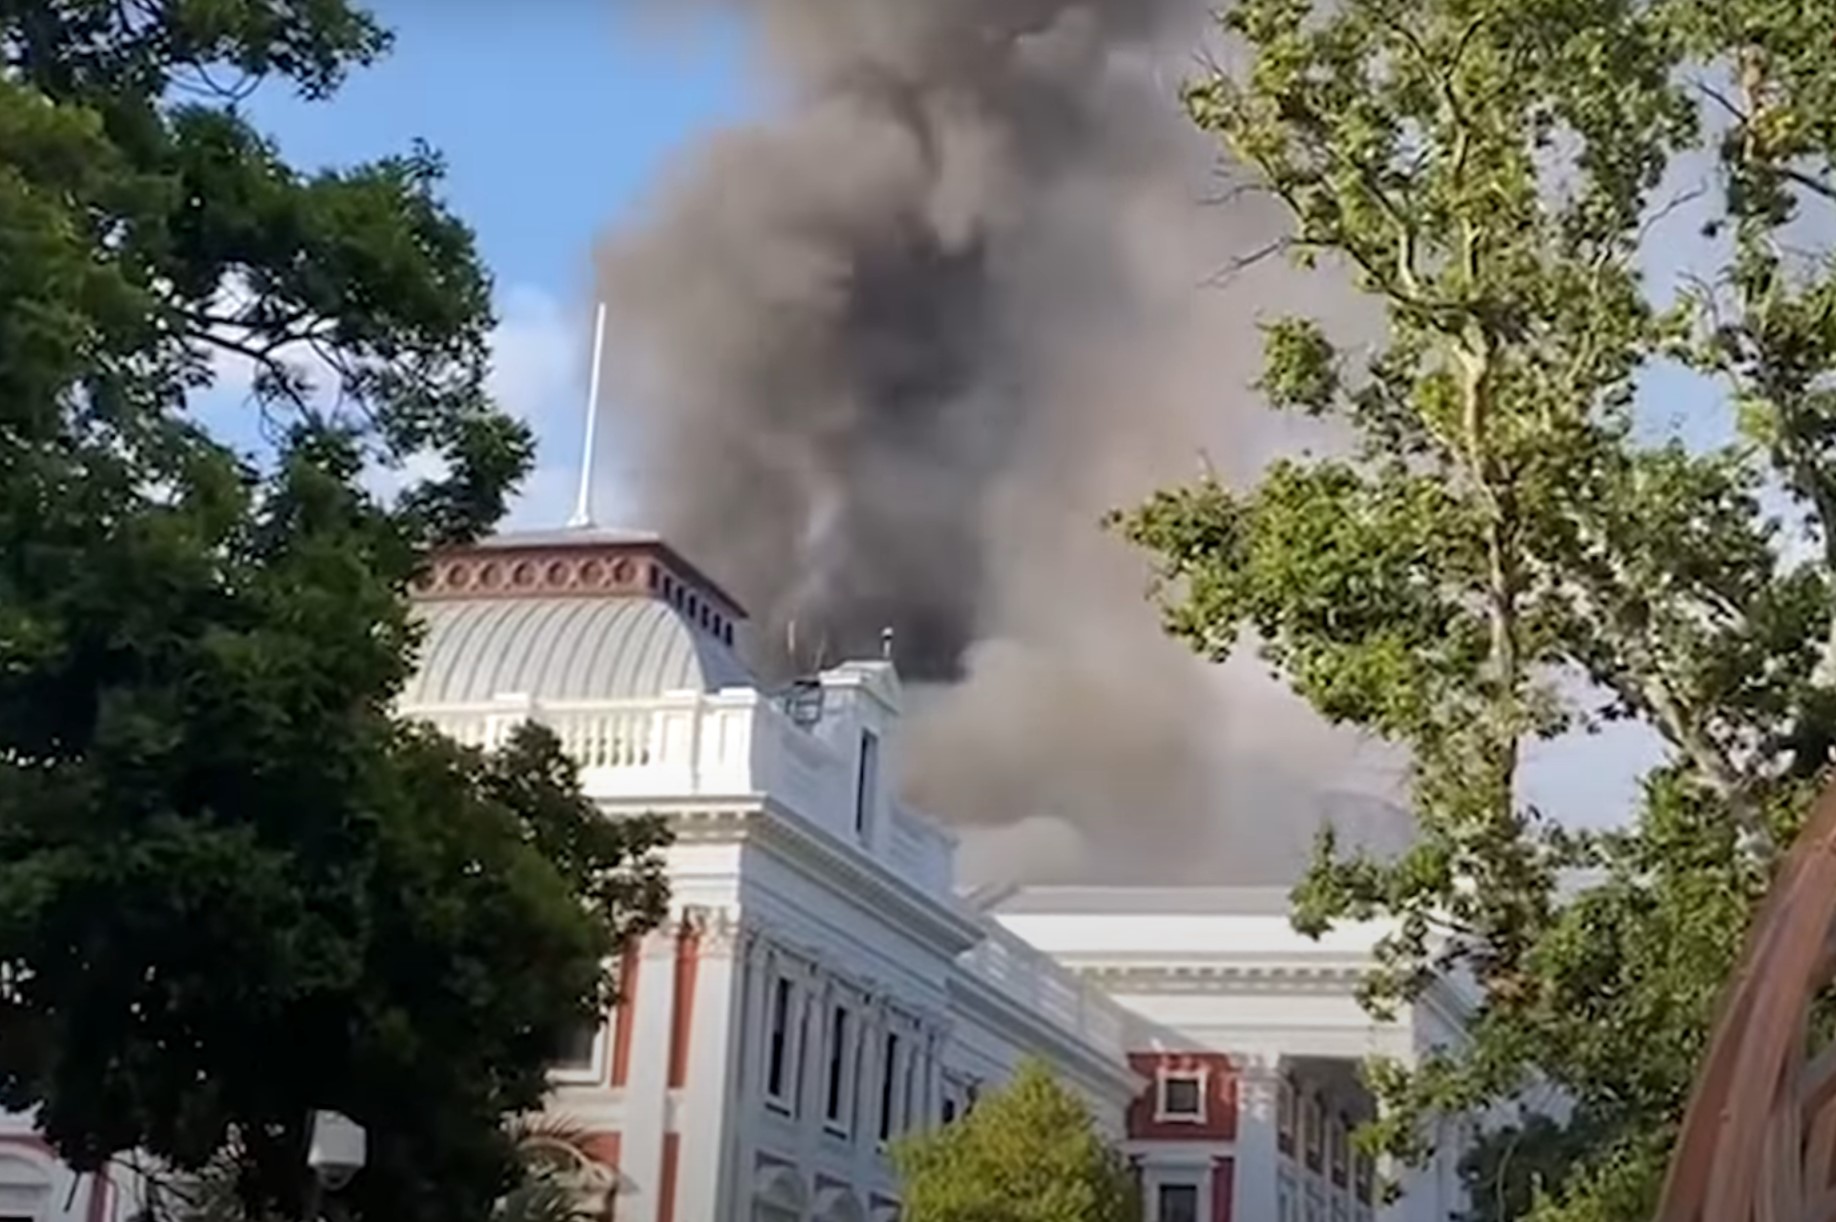 Incendiu la sediul parlamentului Africii de Sud (video)